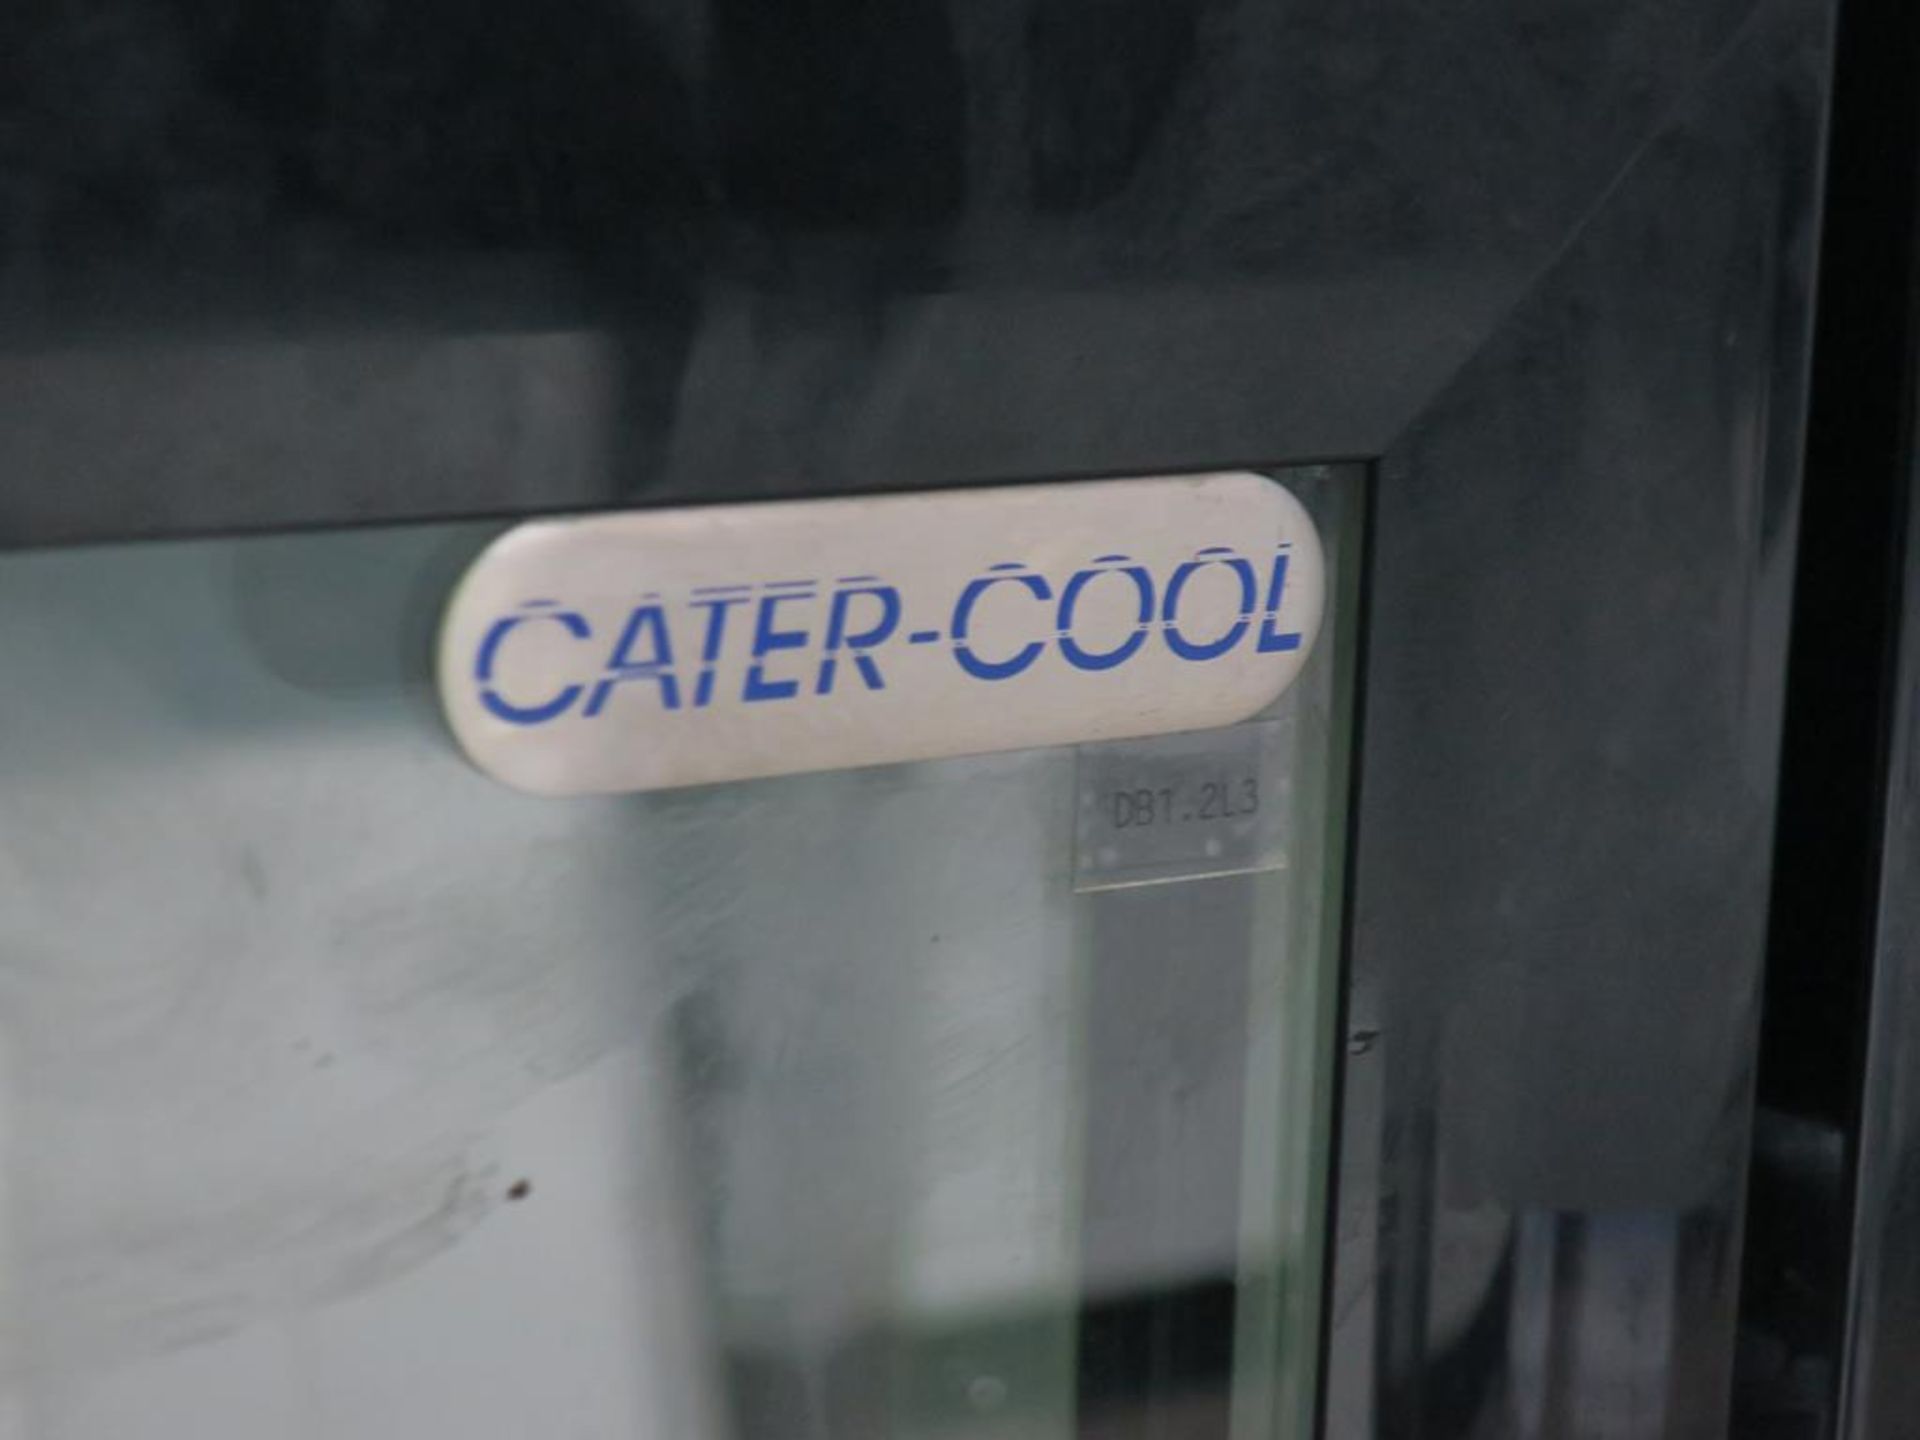 * Cater-Cool Twin Door Display Fridge - Image 2 of 3